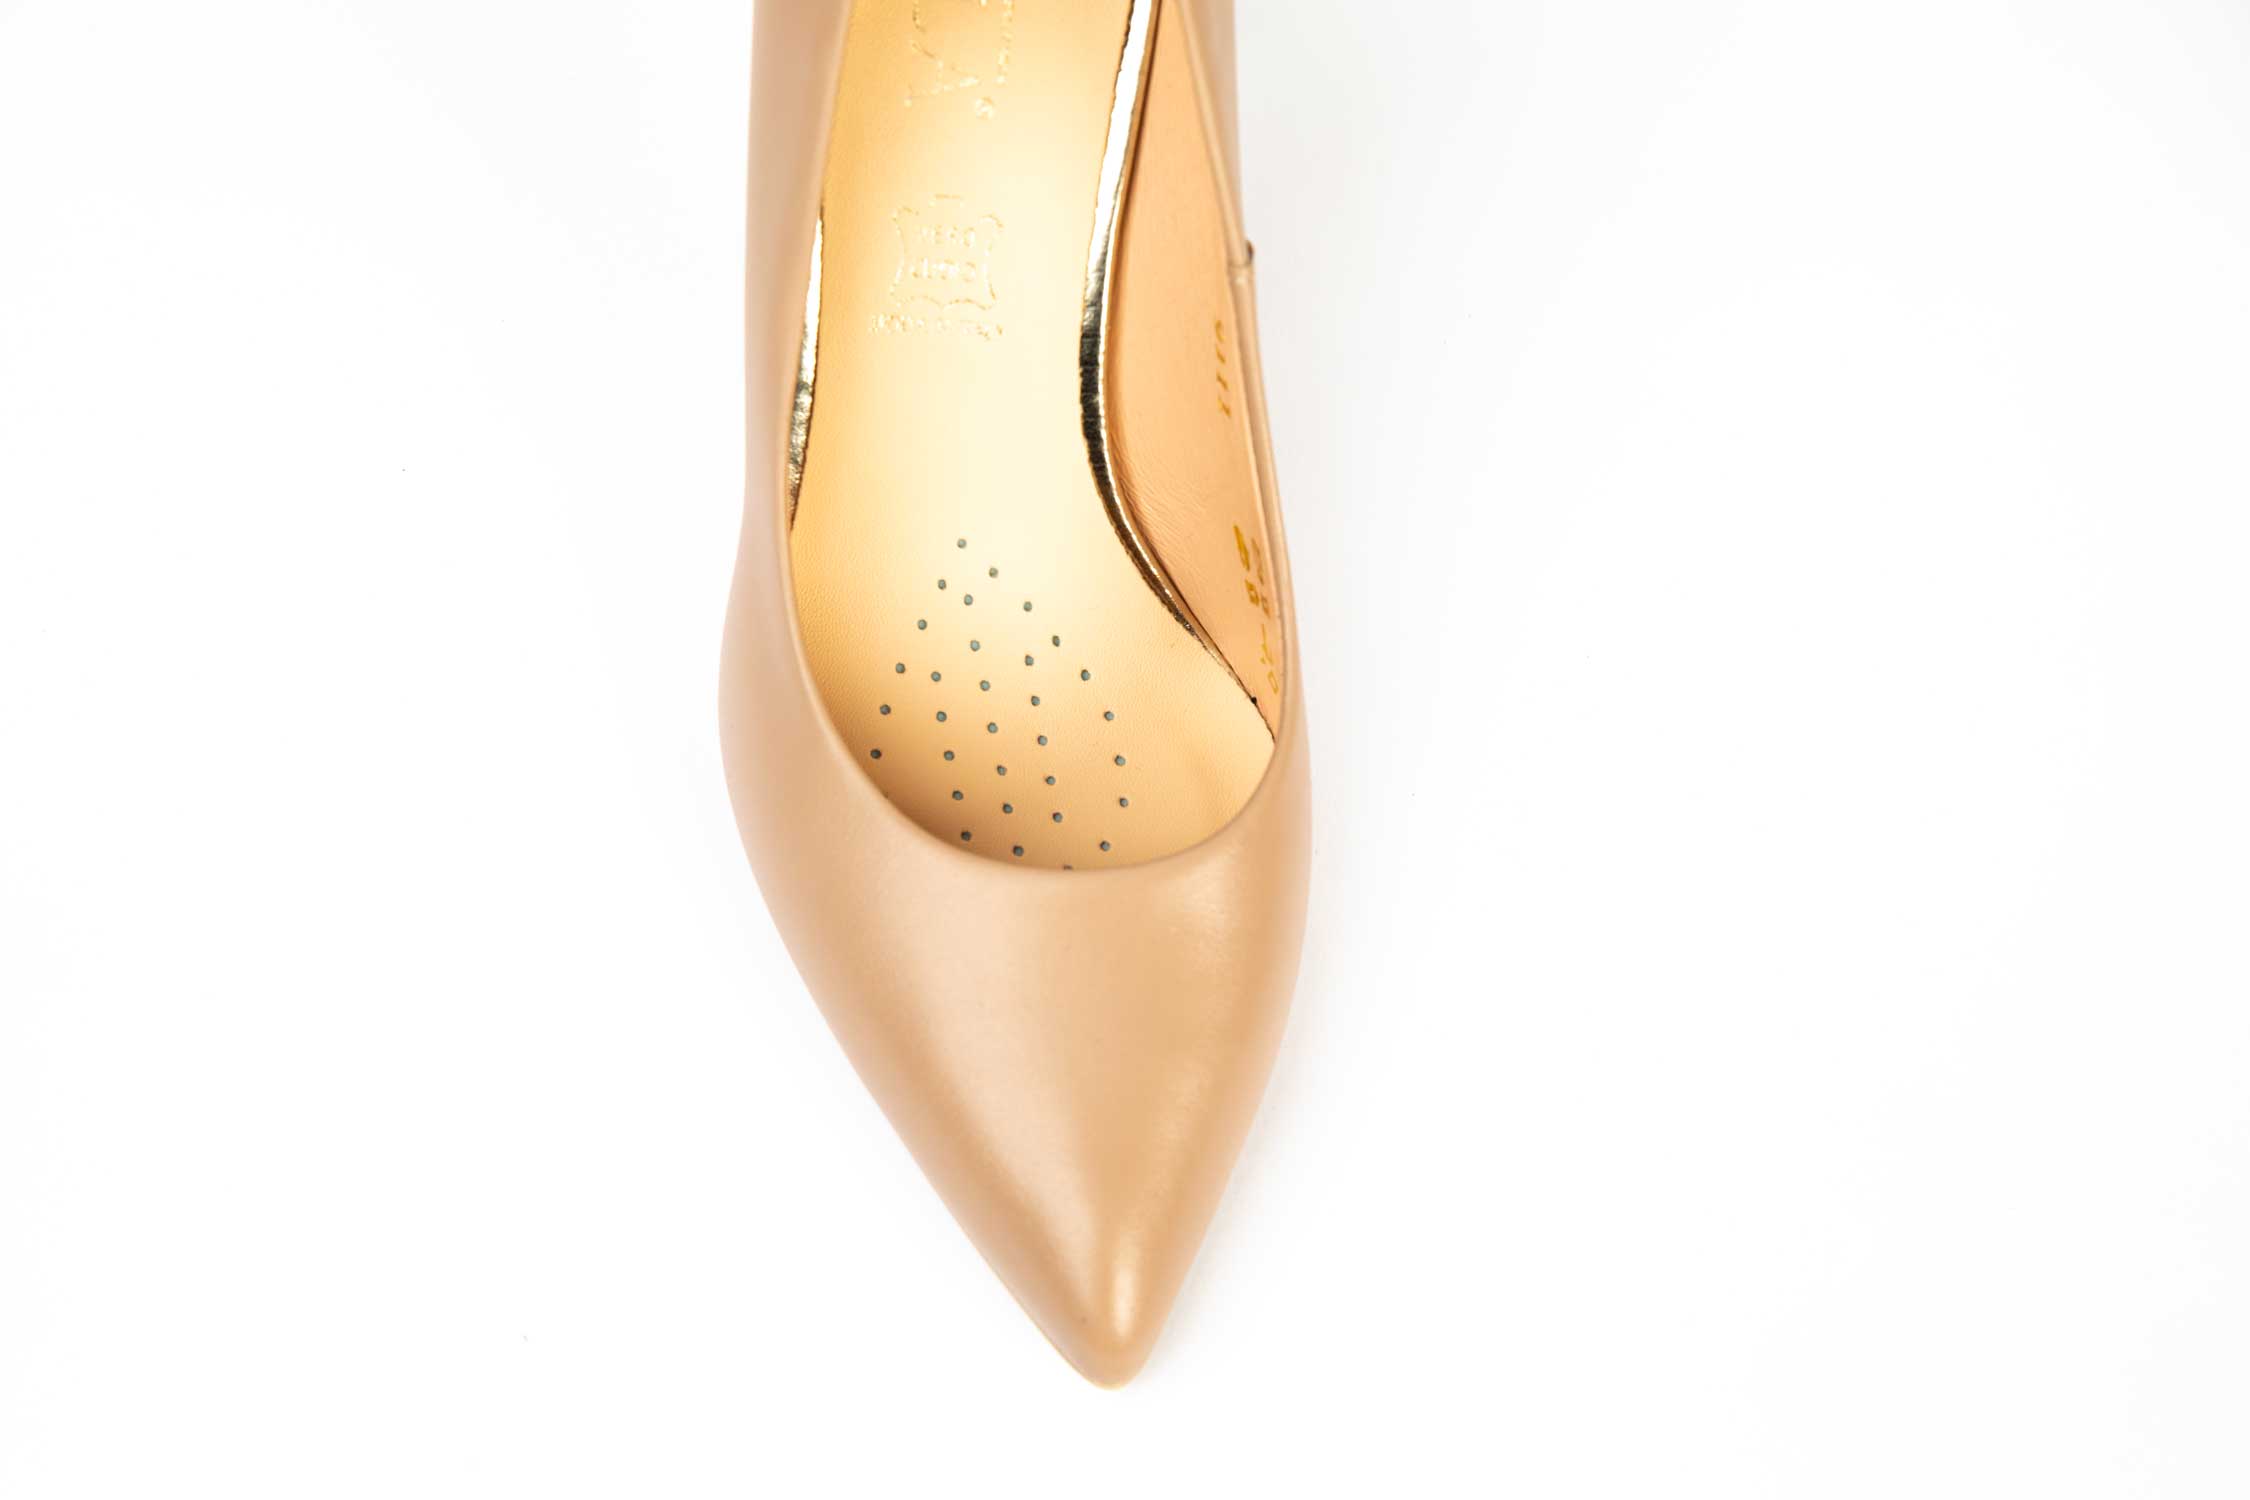 Pantofi dama elegant din piele naturala SALA 9111 nude